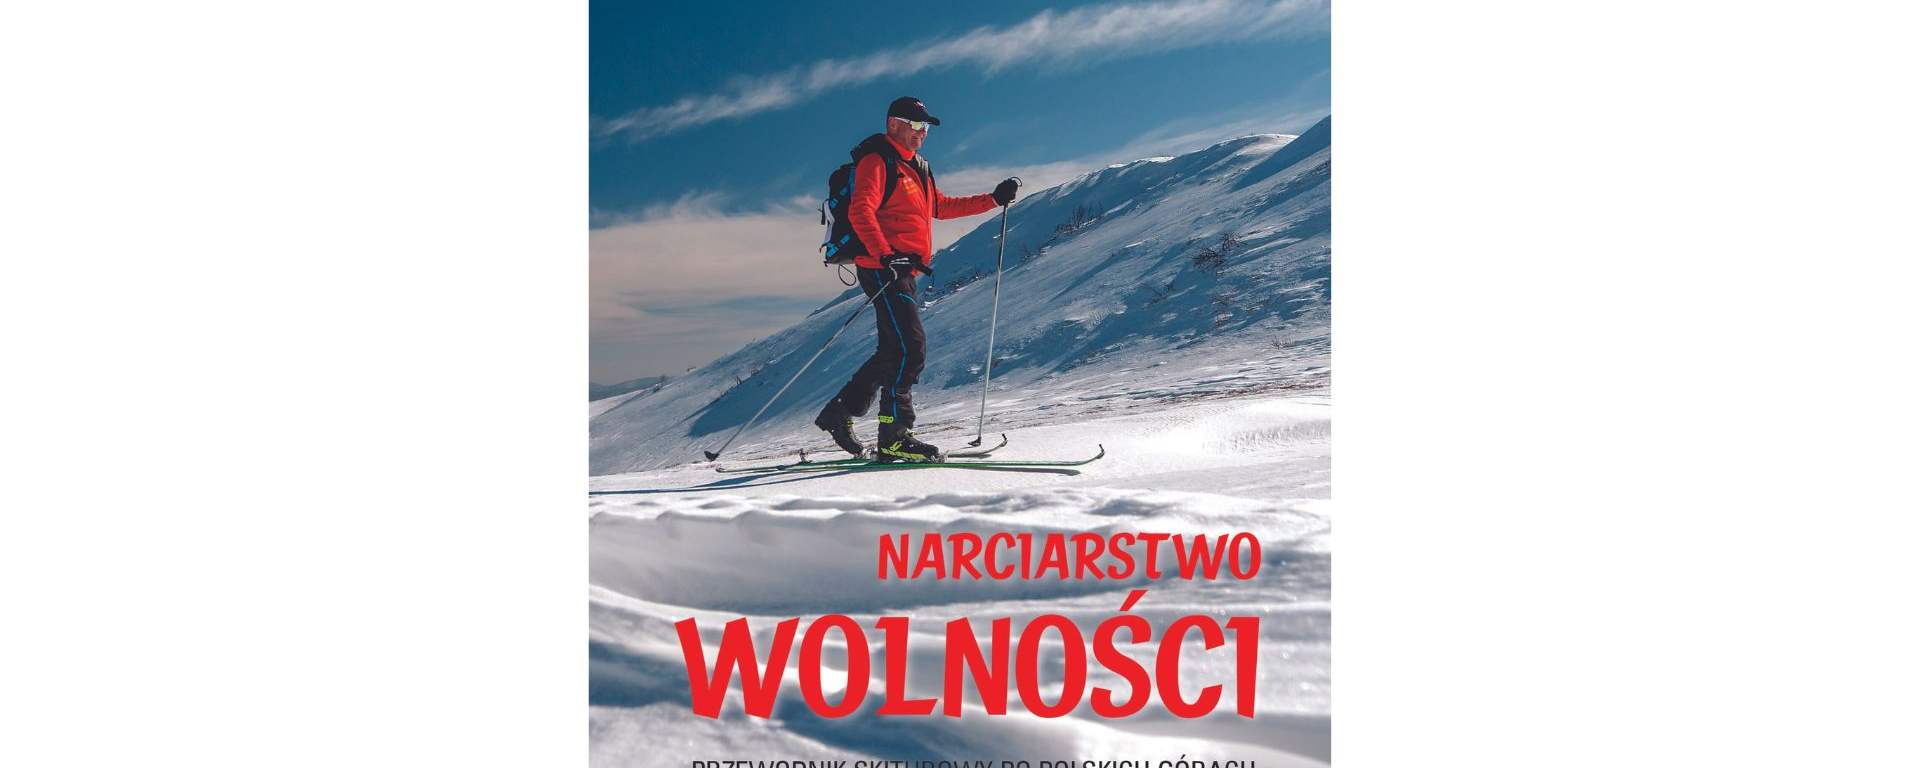 Przewodnik skiturowy po polskich górach